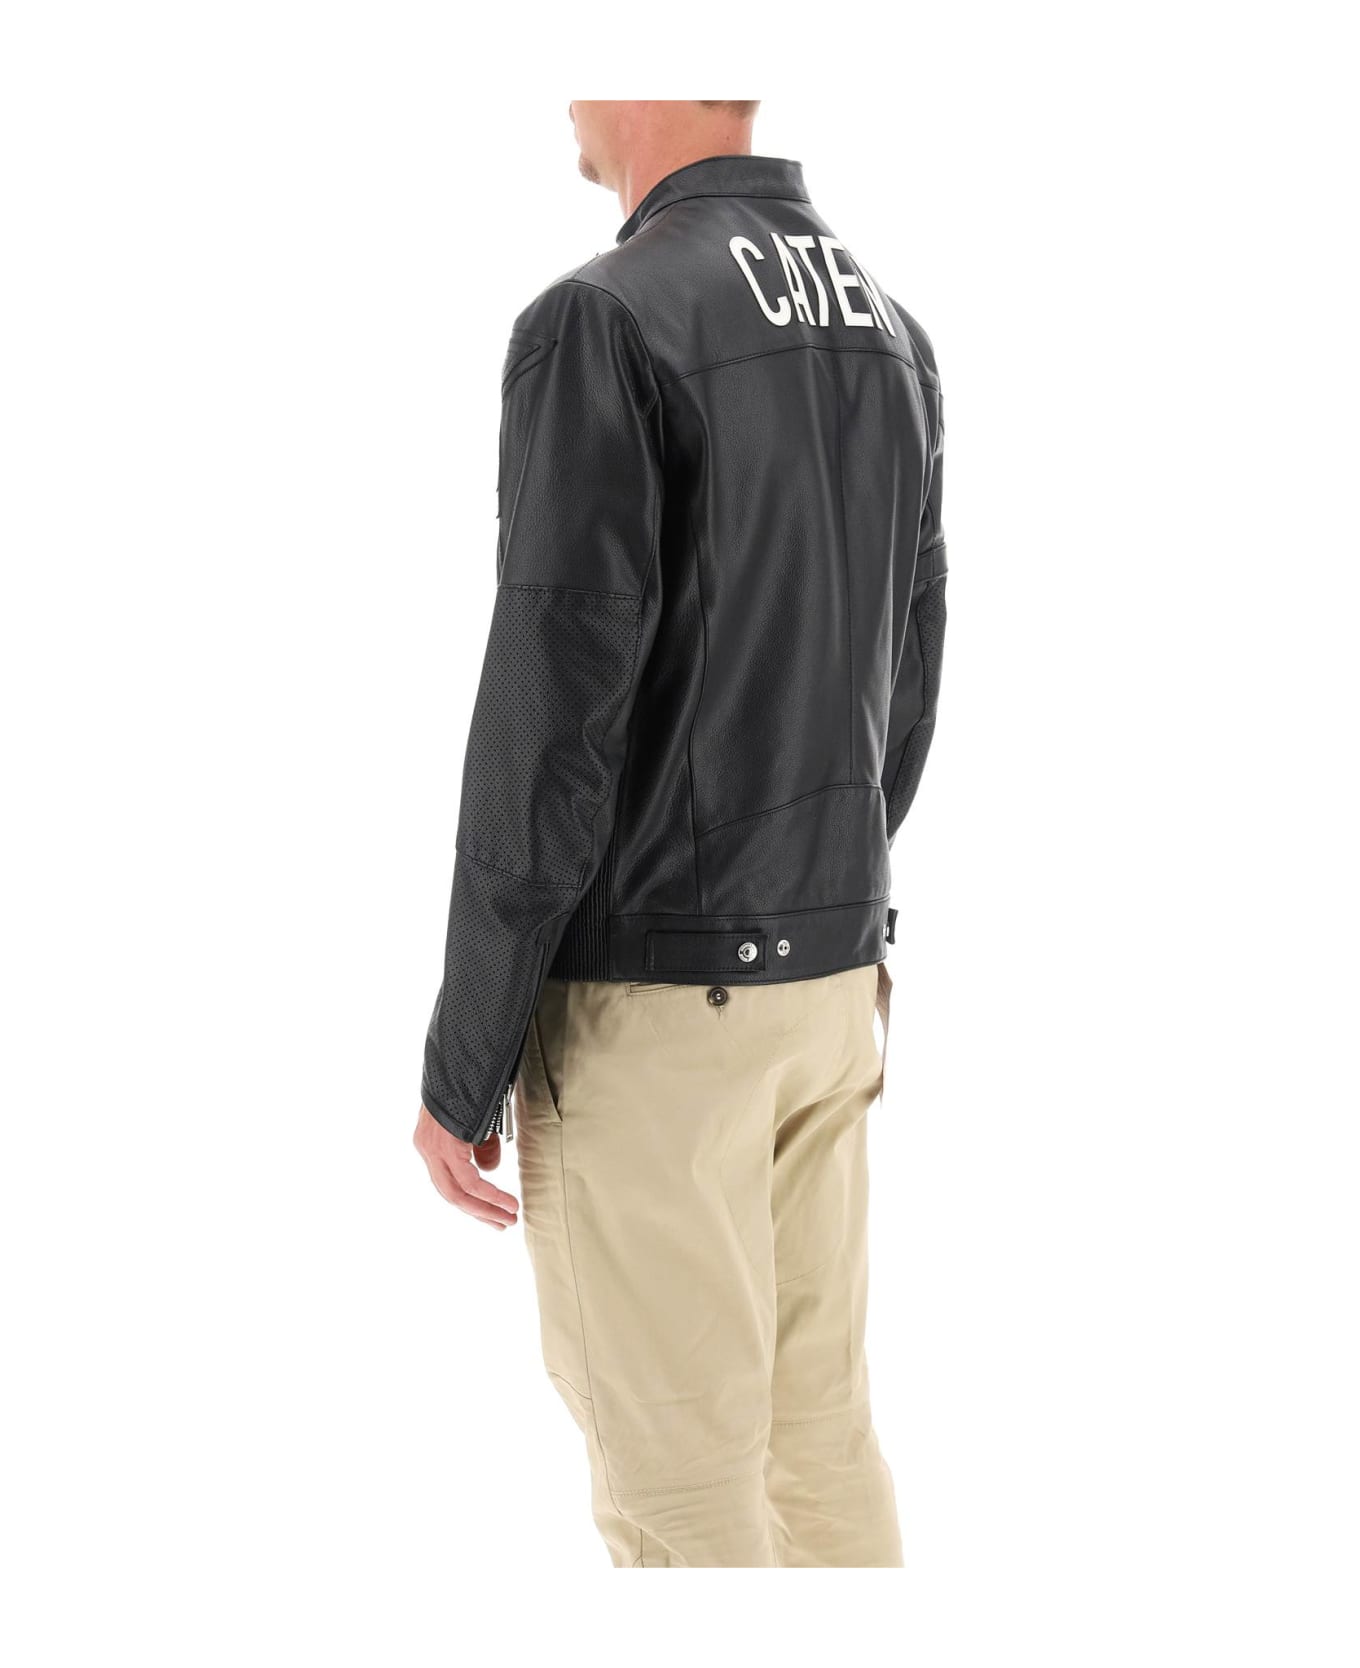 Dsquared2 Leather Biker Jacket - BLACK (Black) レザージャケット